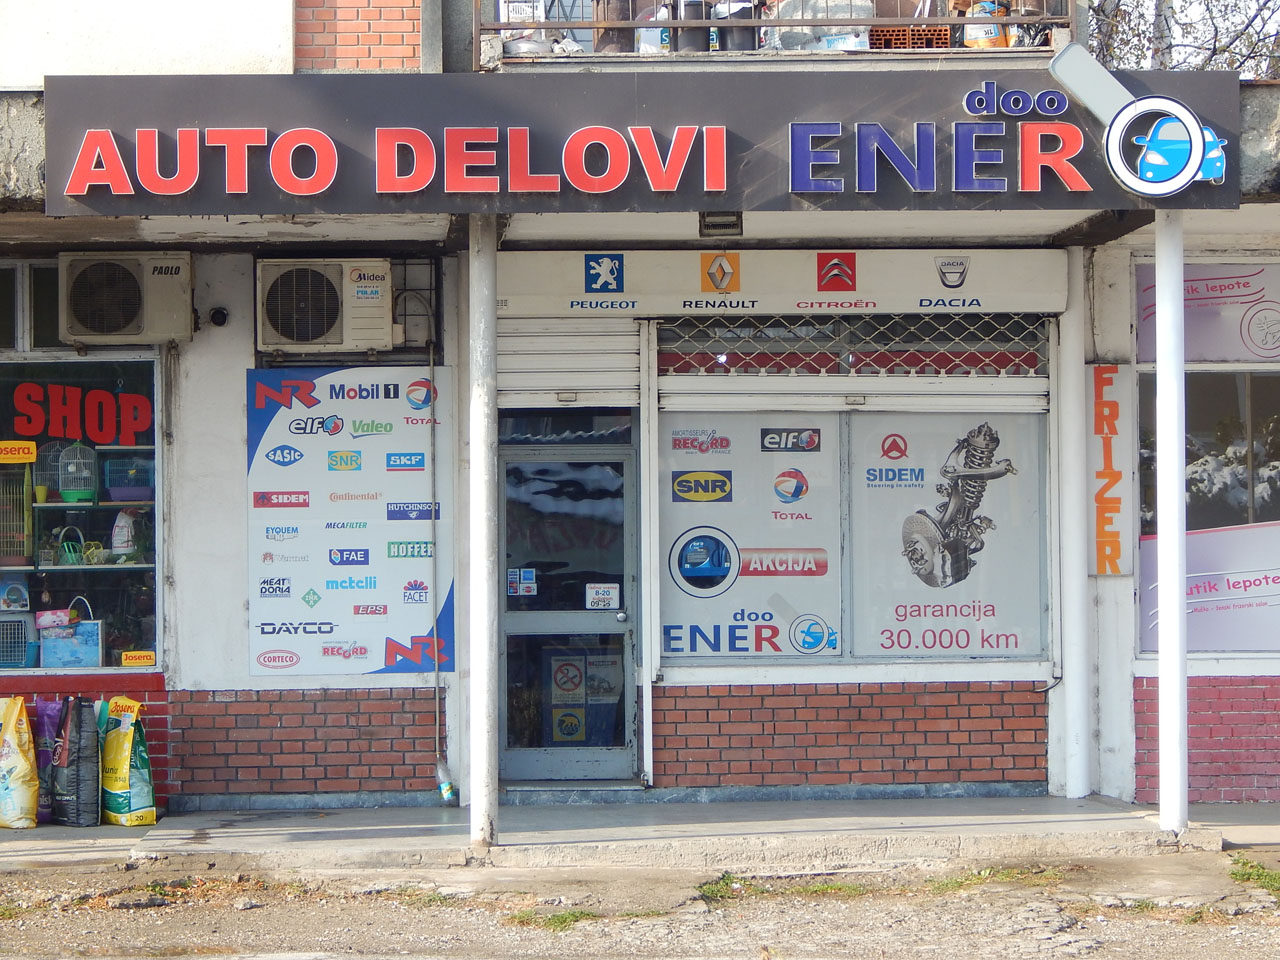 Slika 2 - ENER DOO - Auto delovi, Kragujevac